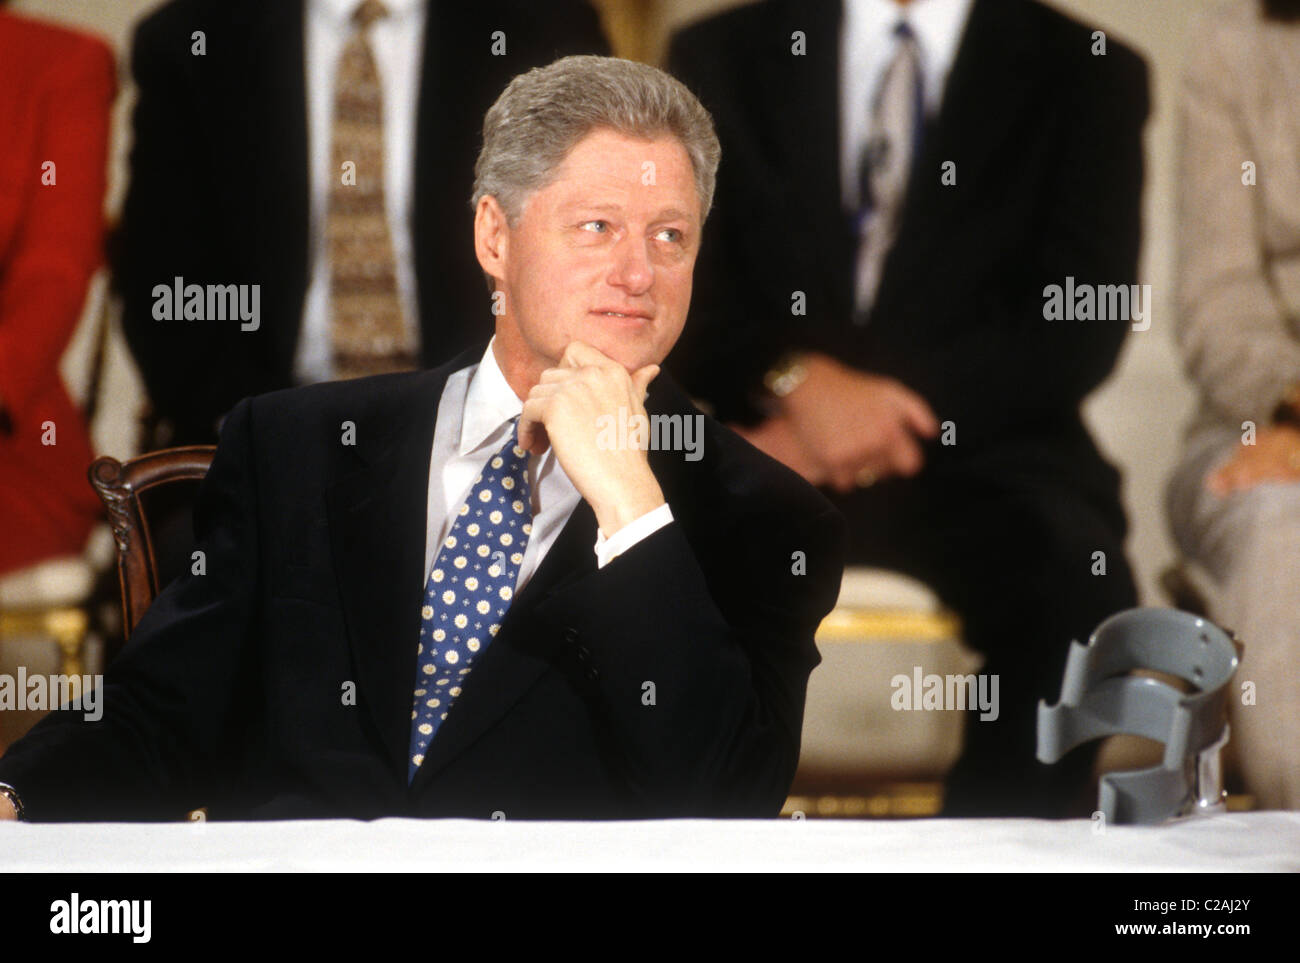 Le président Bill Clinton lors d'un événement à la Maison Blanche à Washington, DC. Banque D'Images